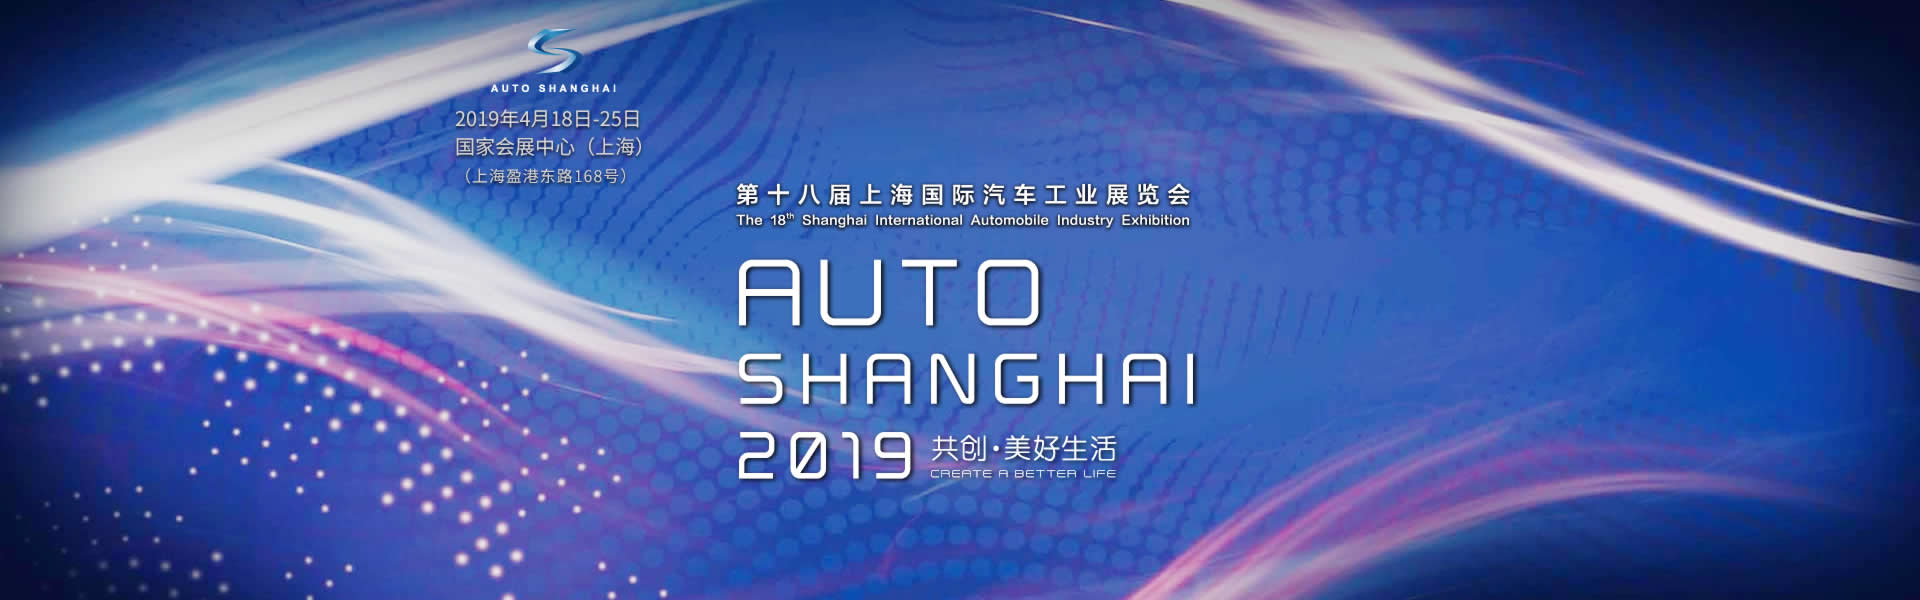 上汽红岩展台 共创·美好未来 第十八届上海国际汽车工业展览会